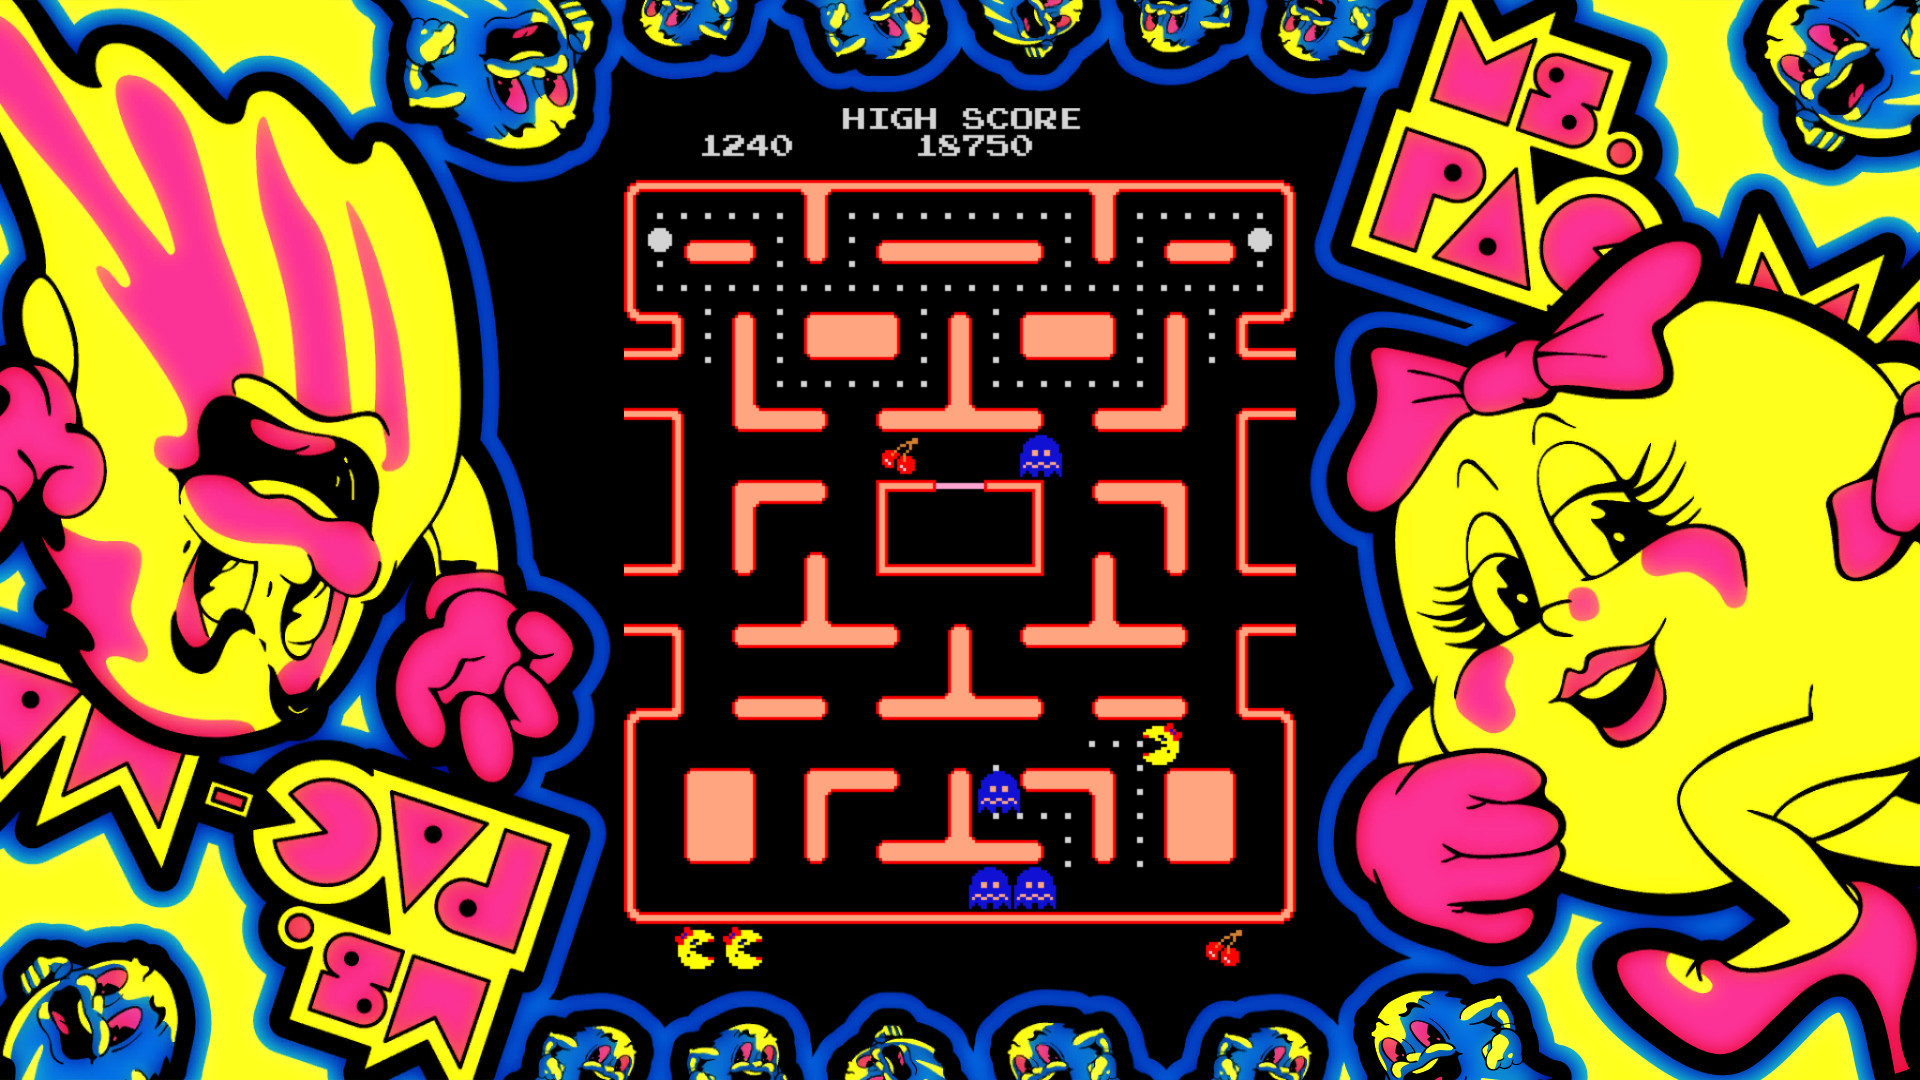 Ms. Pac-Man gameplay